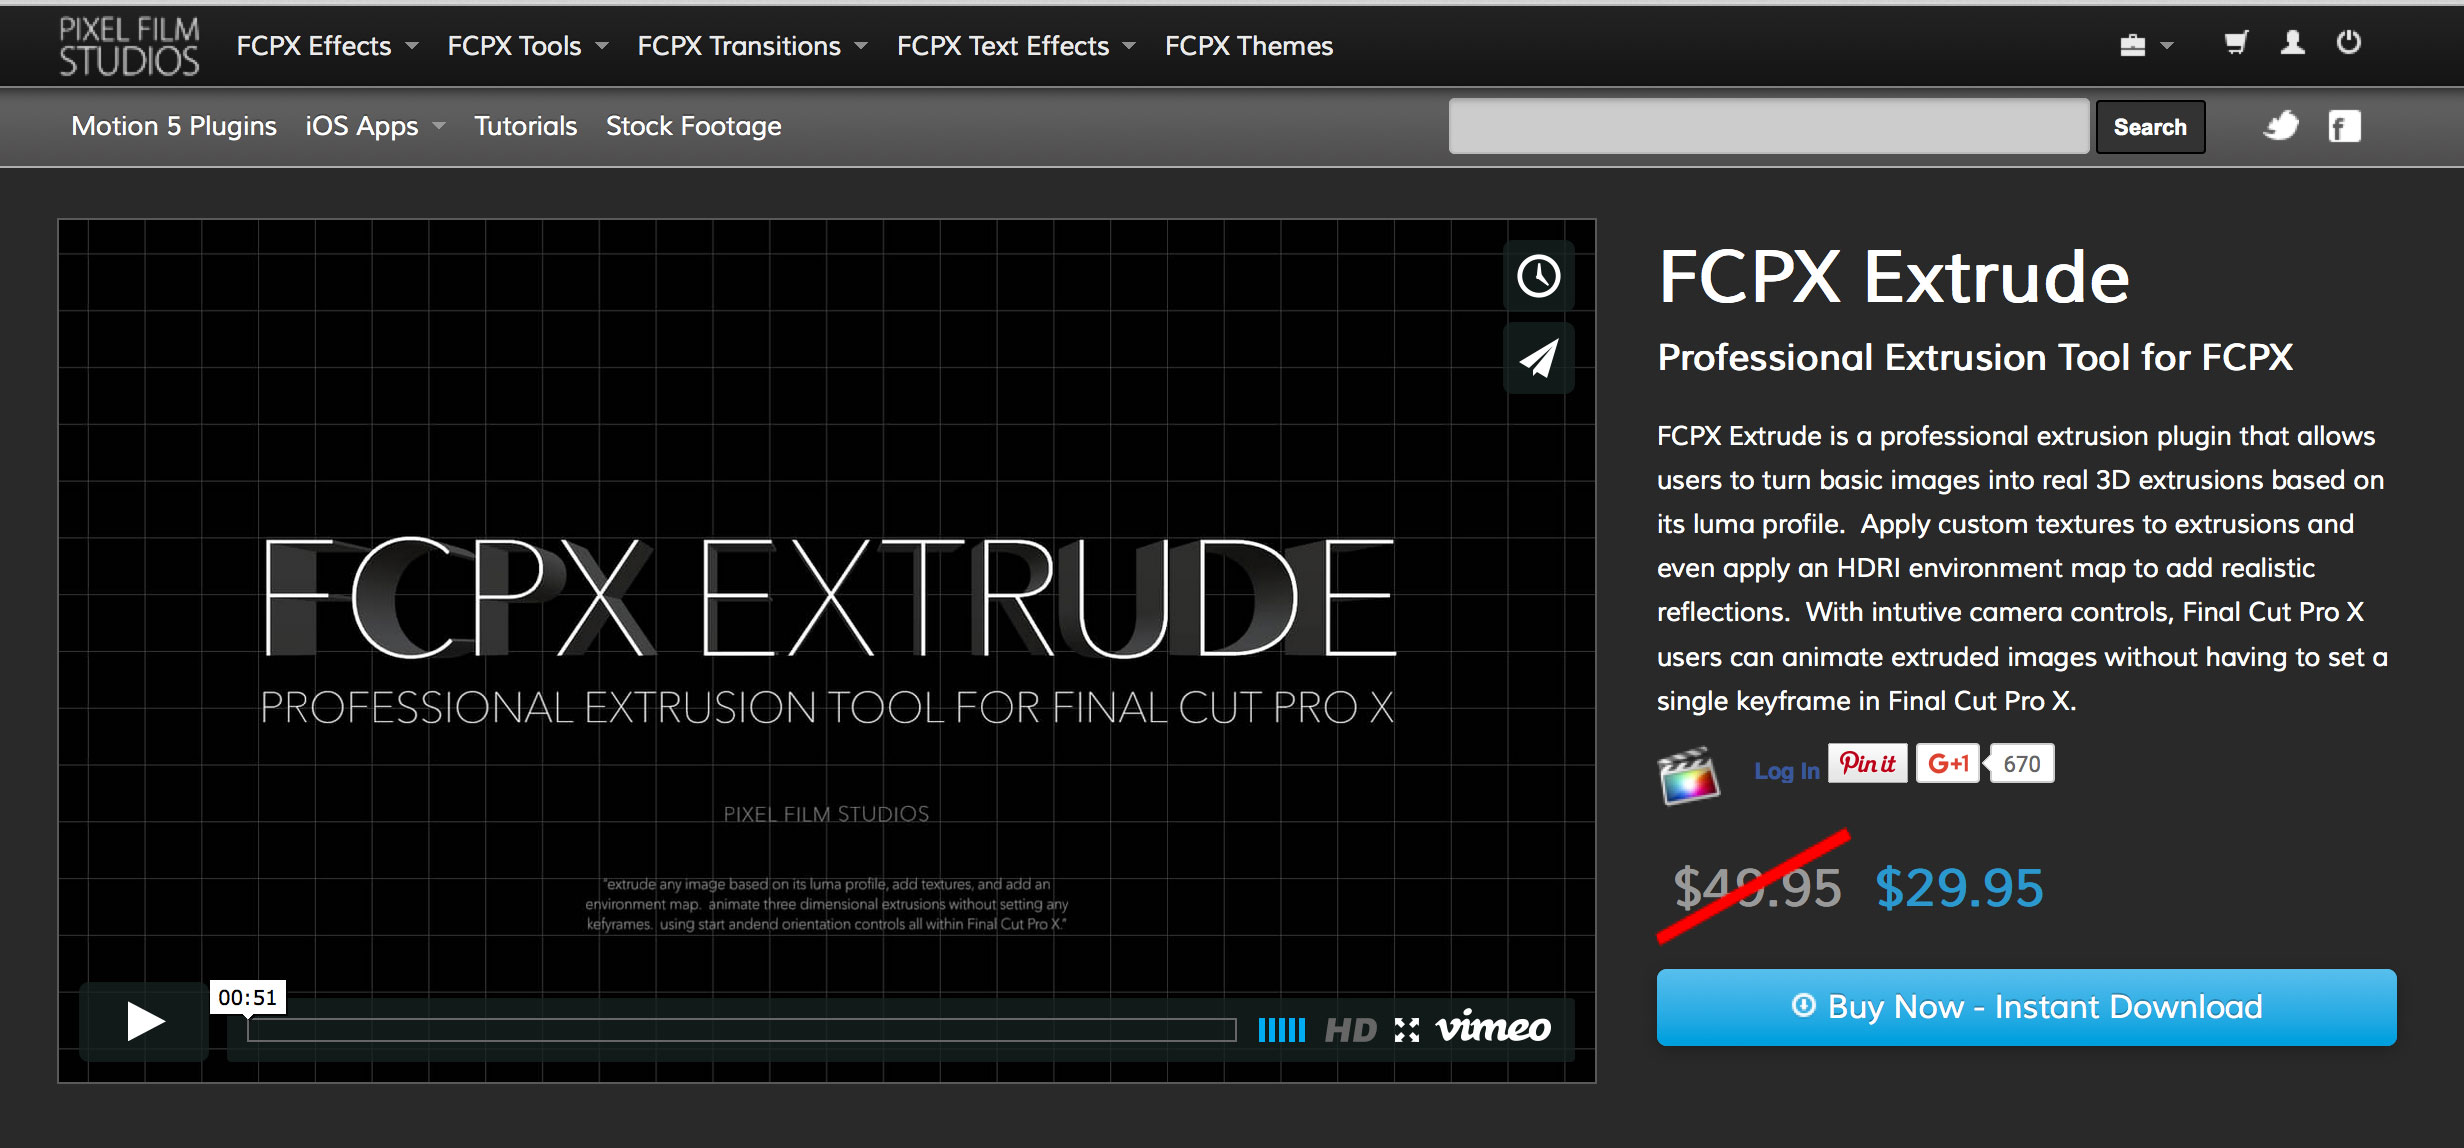 fx final cut pro x pixelfilm studios torrent